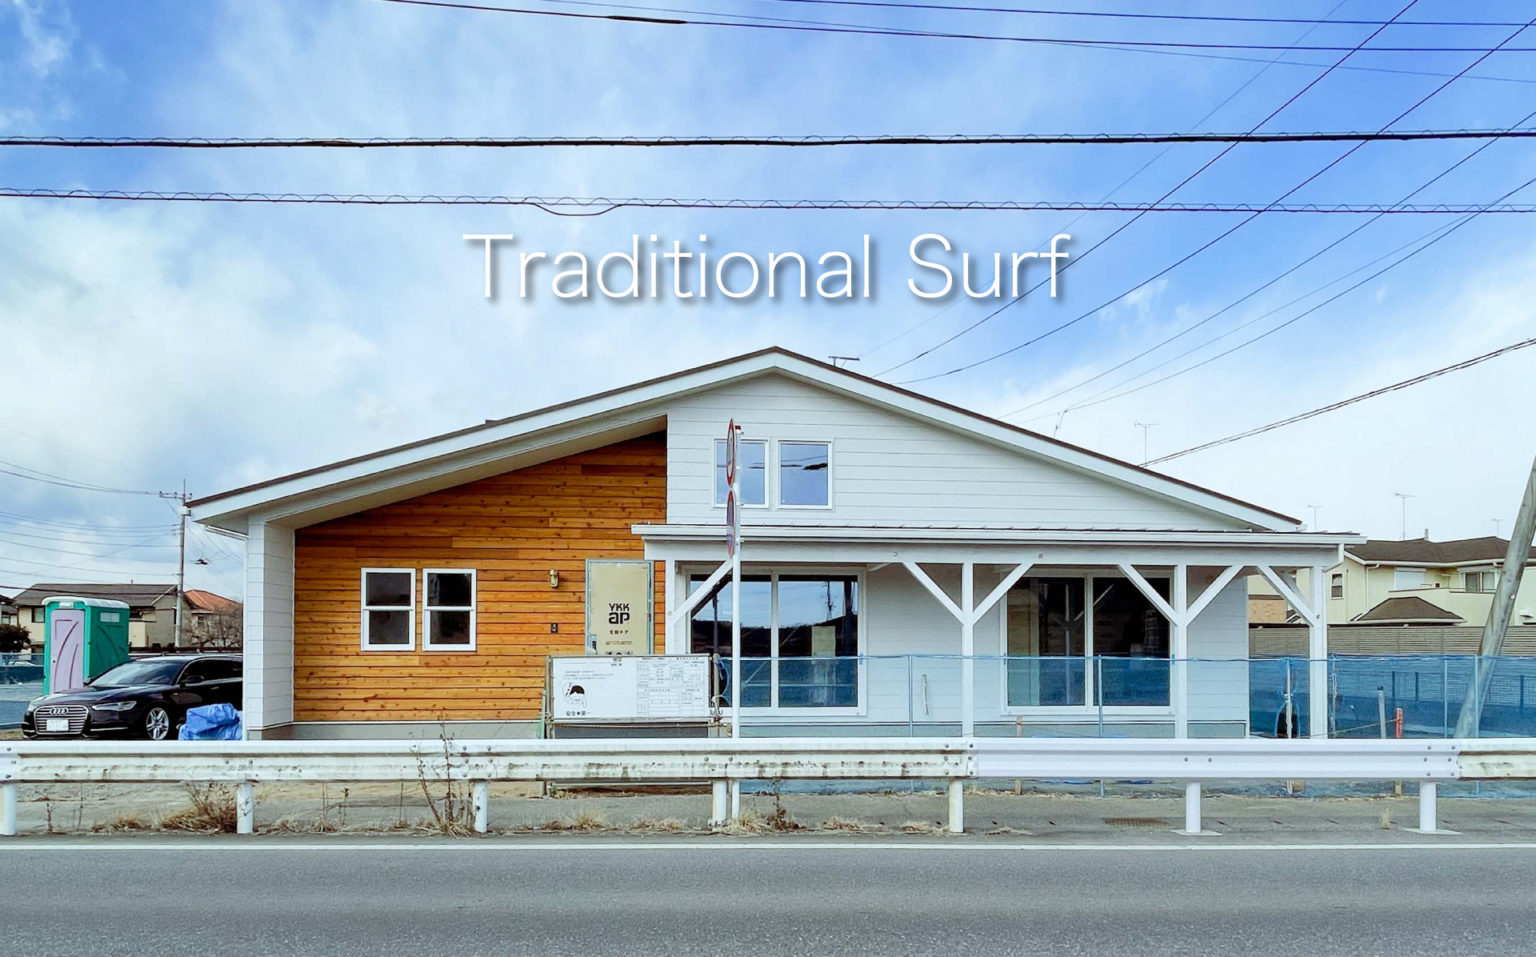 [終了]家展Vol.18「Traditional Surf」2/19-2/20完成見学会 アイキャッチ画像